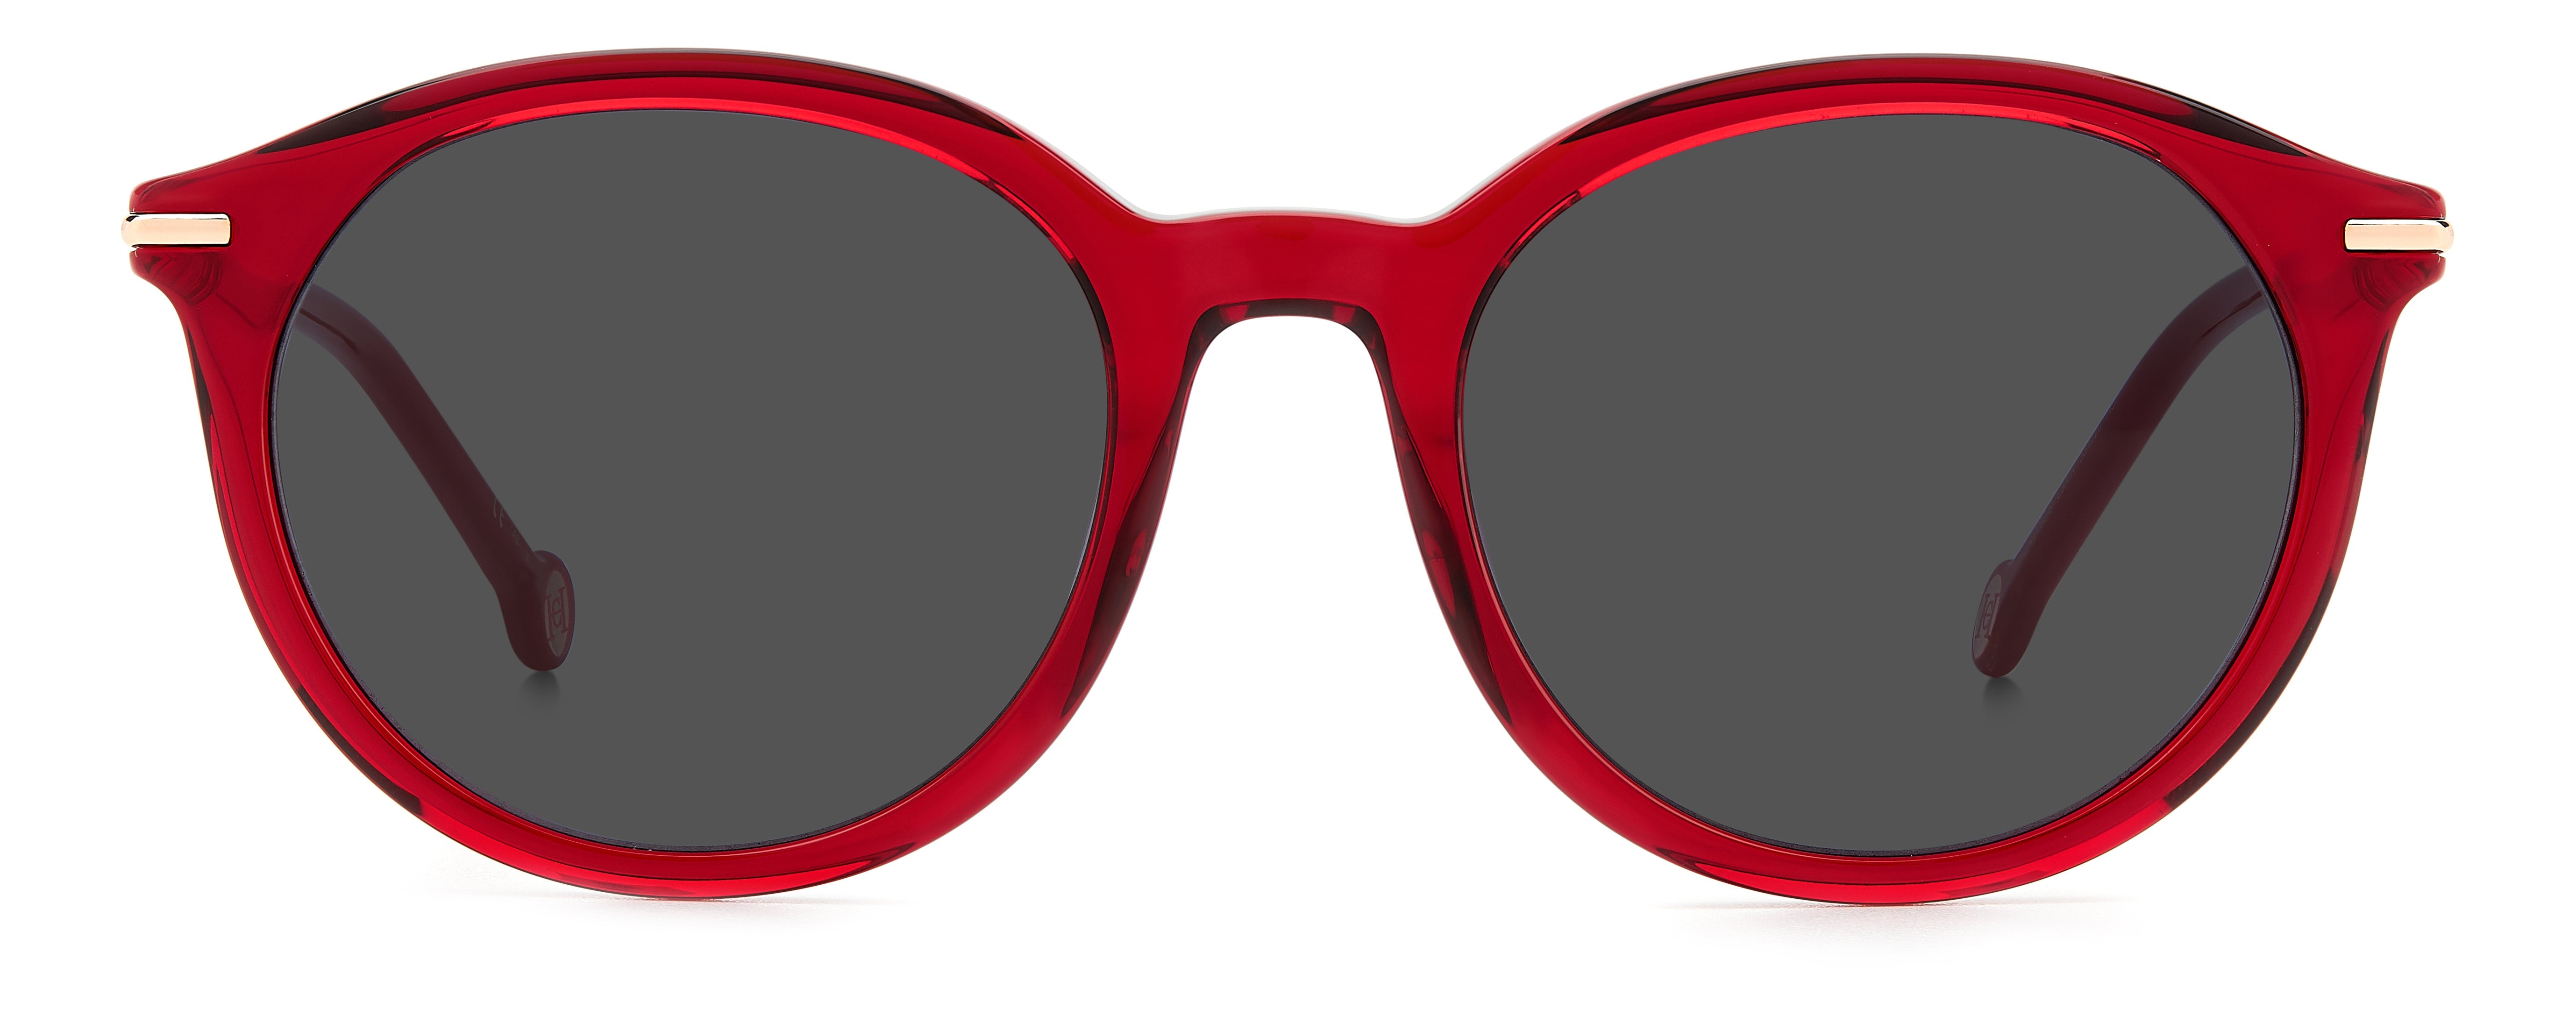 Carolina Herrera Woman Round Sunglasses